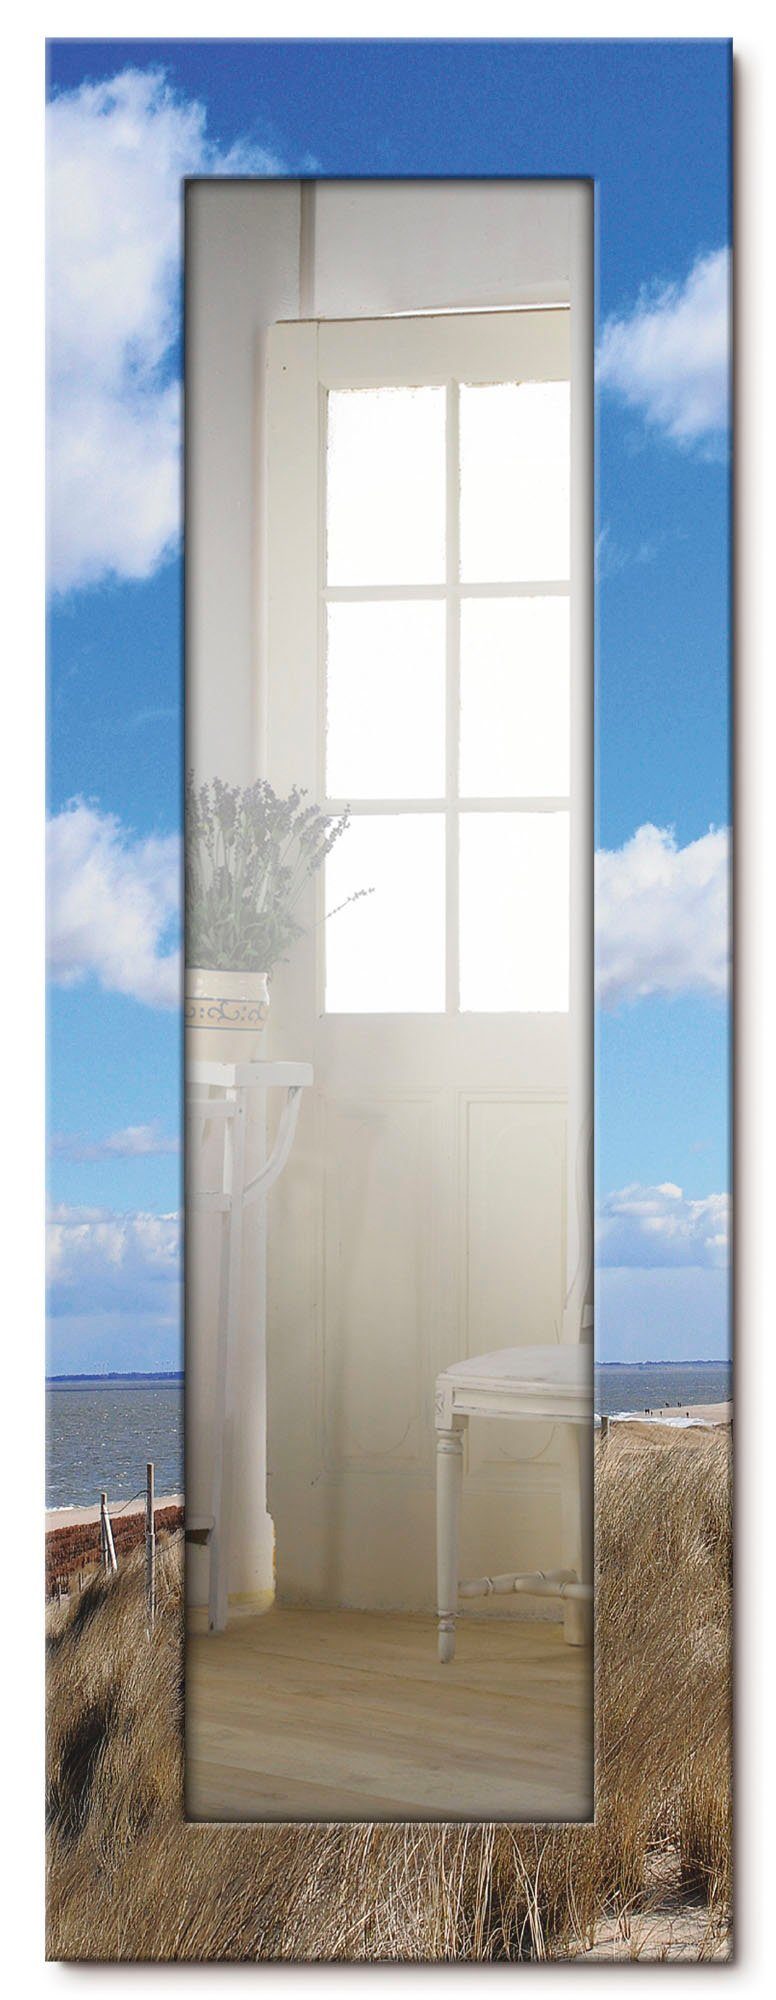 Artland Sierspiegel Vuurtoren Sylt ingelijste spiegel voor het hele lichaam met motiefrand, geschikt voor kleine, smalle hal, halspiegel, mirror spiegel omrand om op te hangen